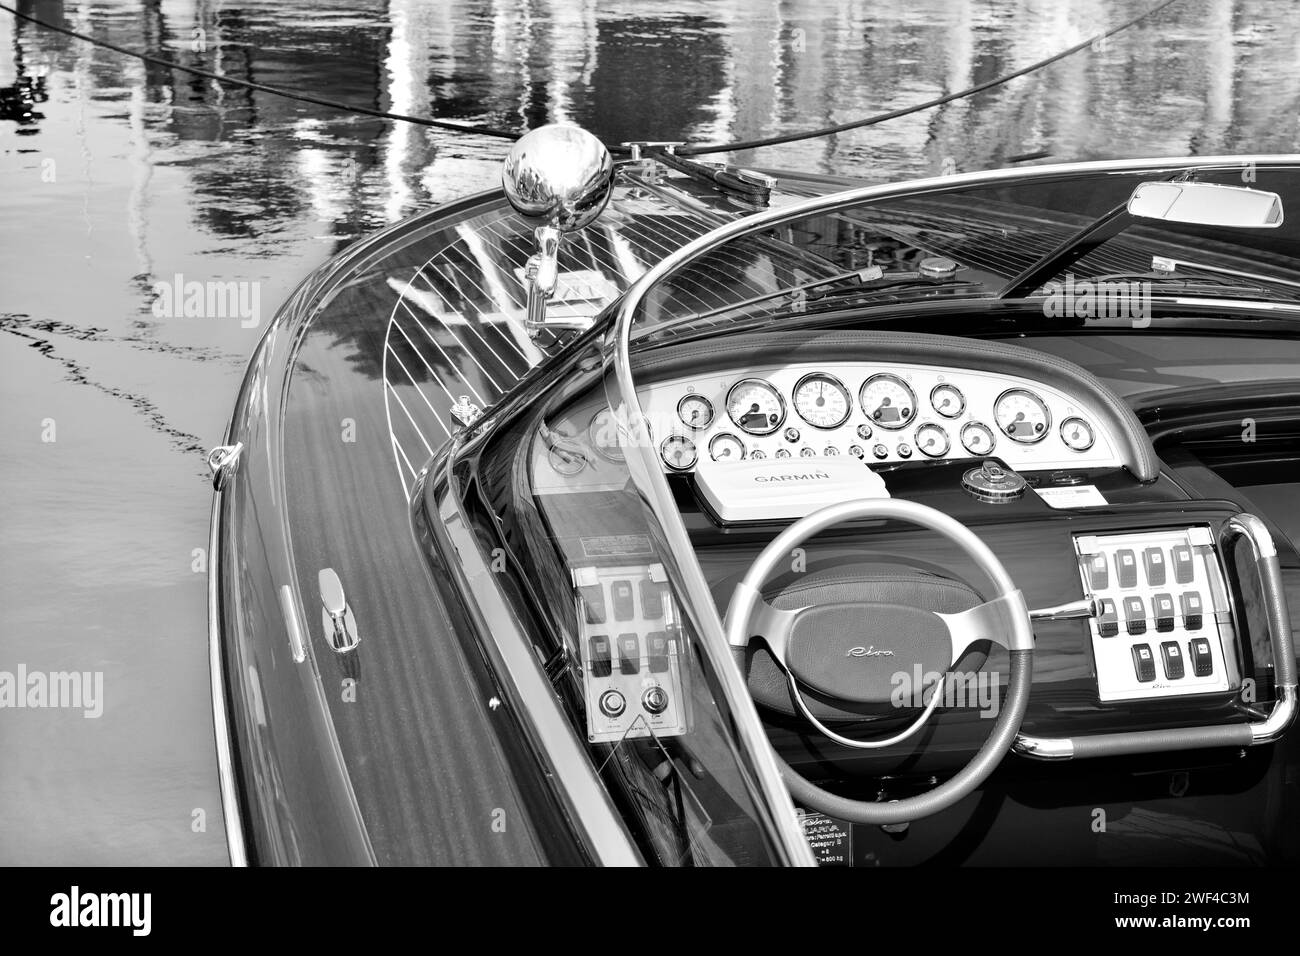 Planche moteur Aquariva Riva - Ferretti Group Noir et blanc Banque D'Images